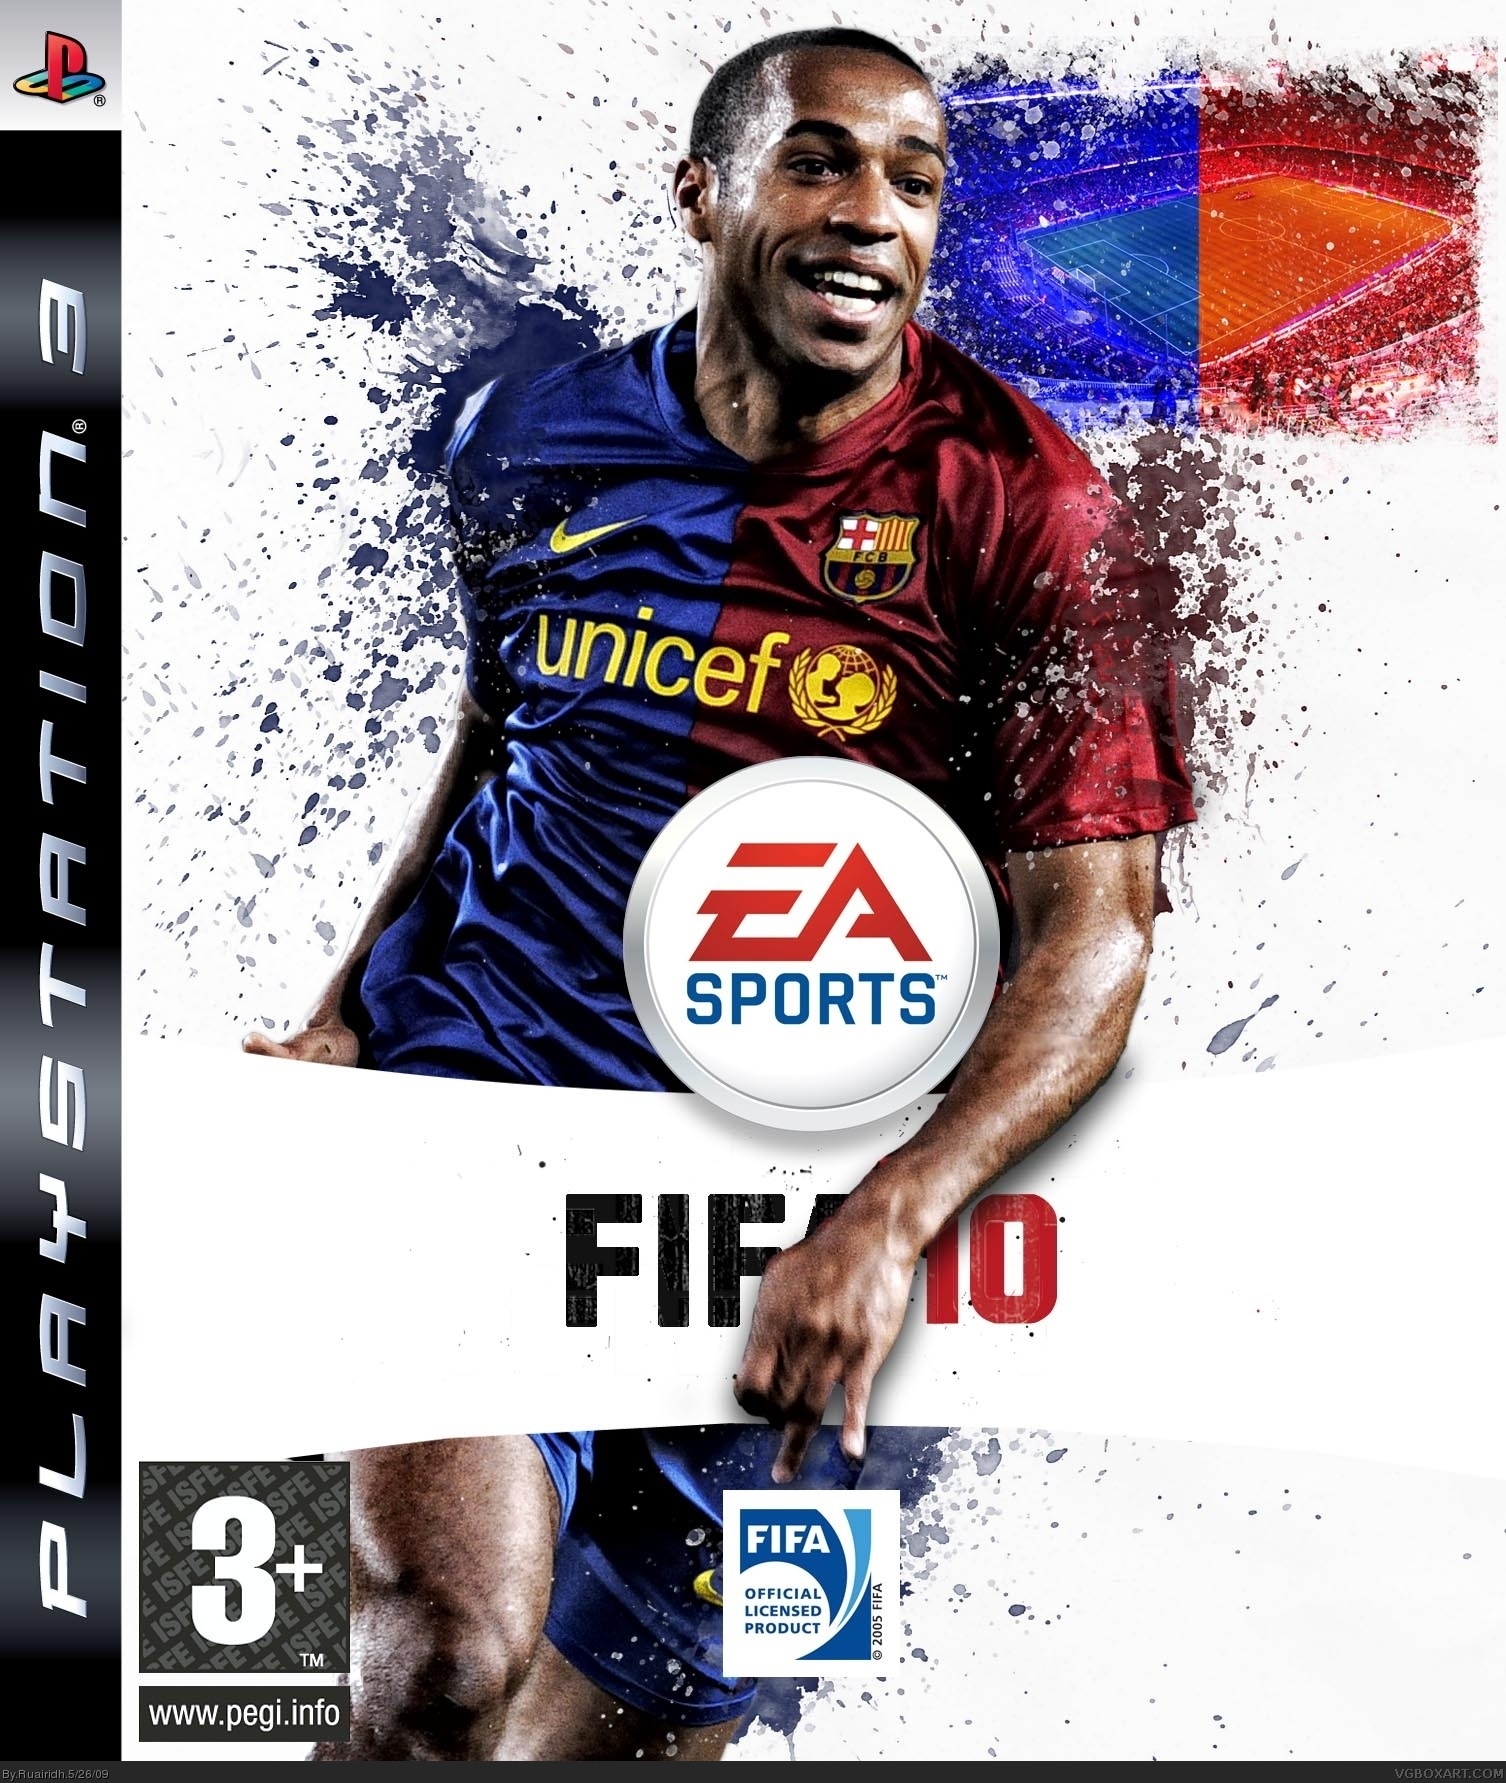 FIFA 10 box cover